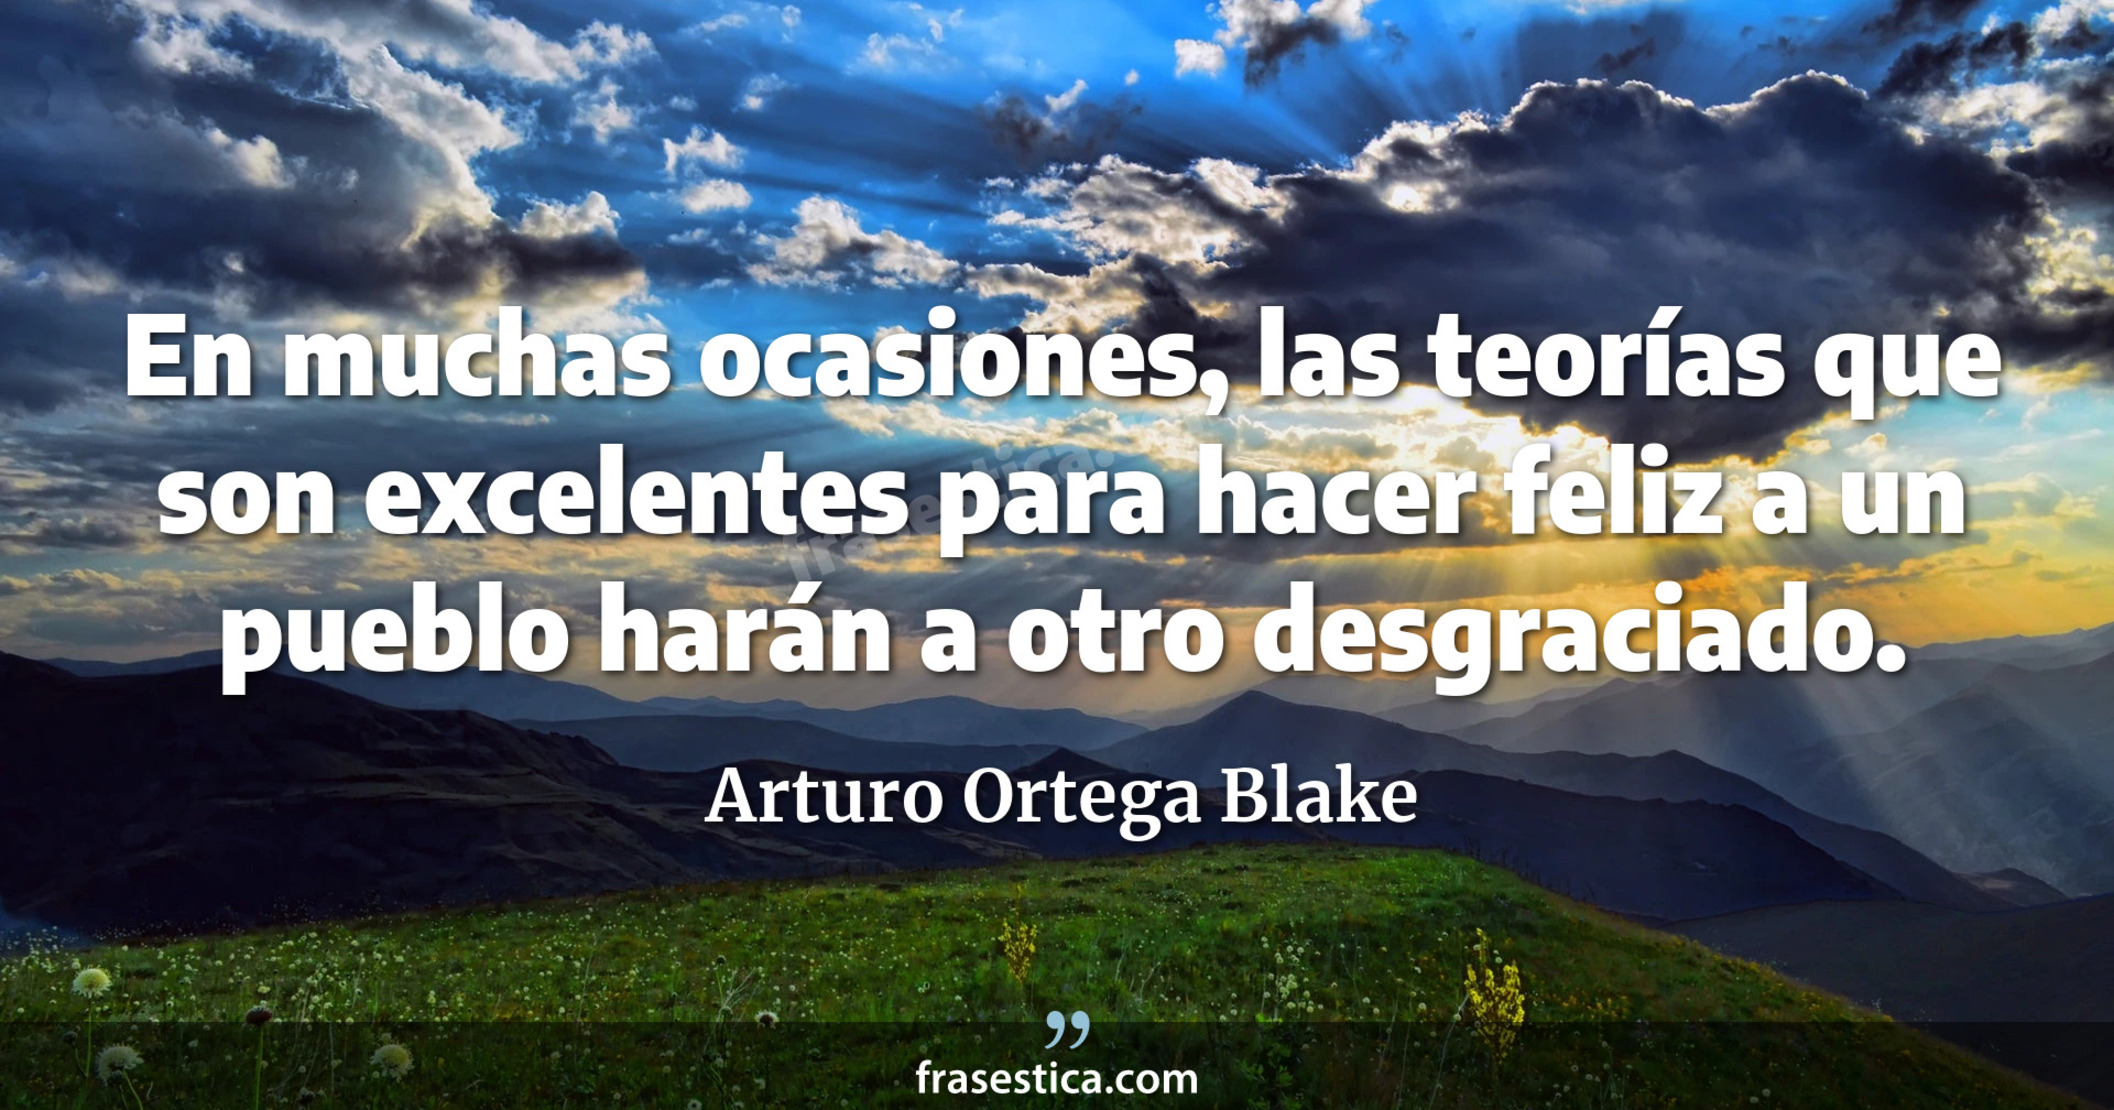 En muchas ocasiones, las teorías que son excelentes para hacer feliz a un pueblo harán a otro desgraciado. - Arturo Ortega Blake